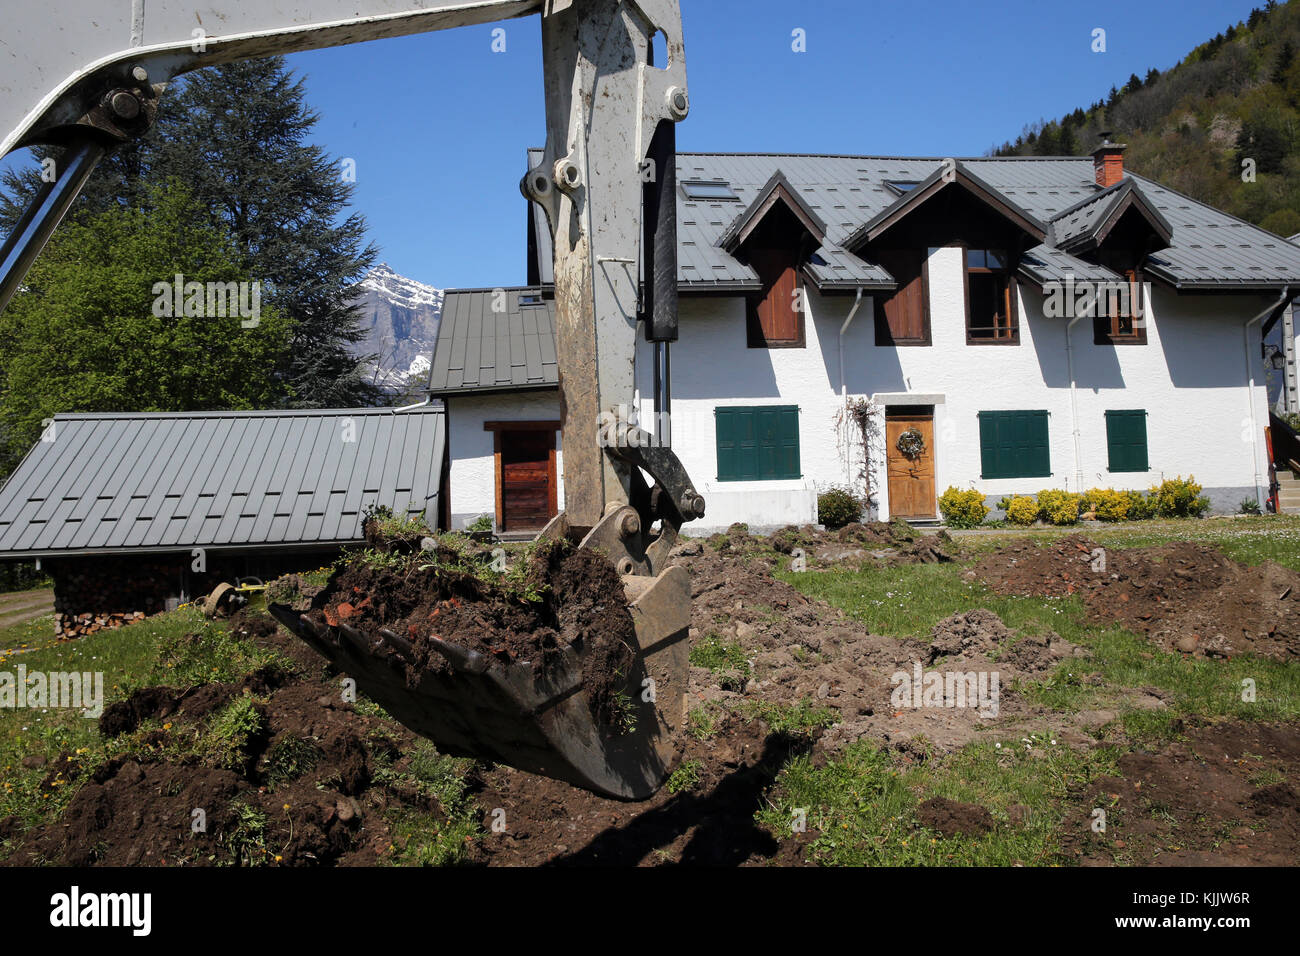 Site de construction. Mechanical digger au travail dans un jardin. La France. Banque D'Images